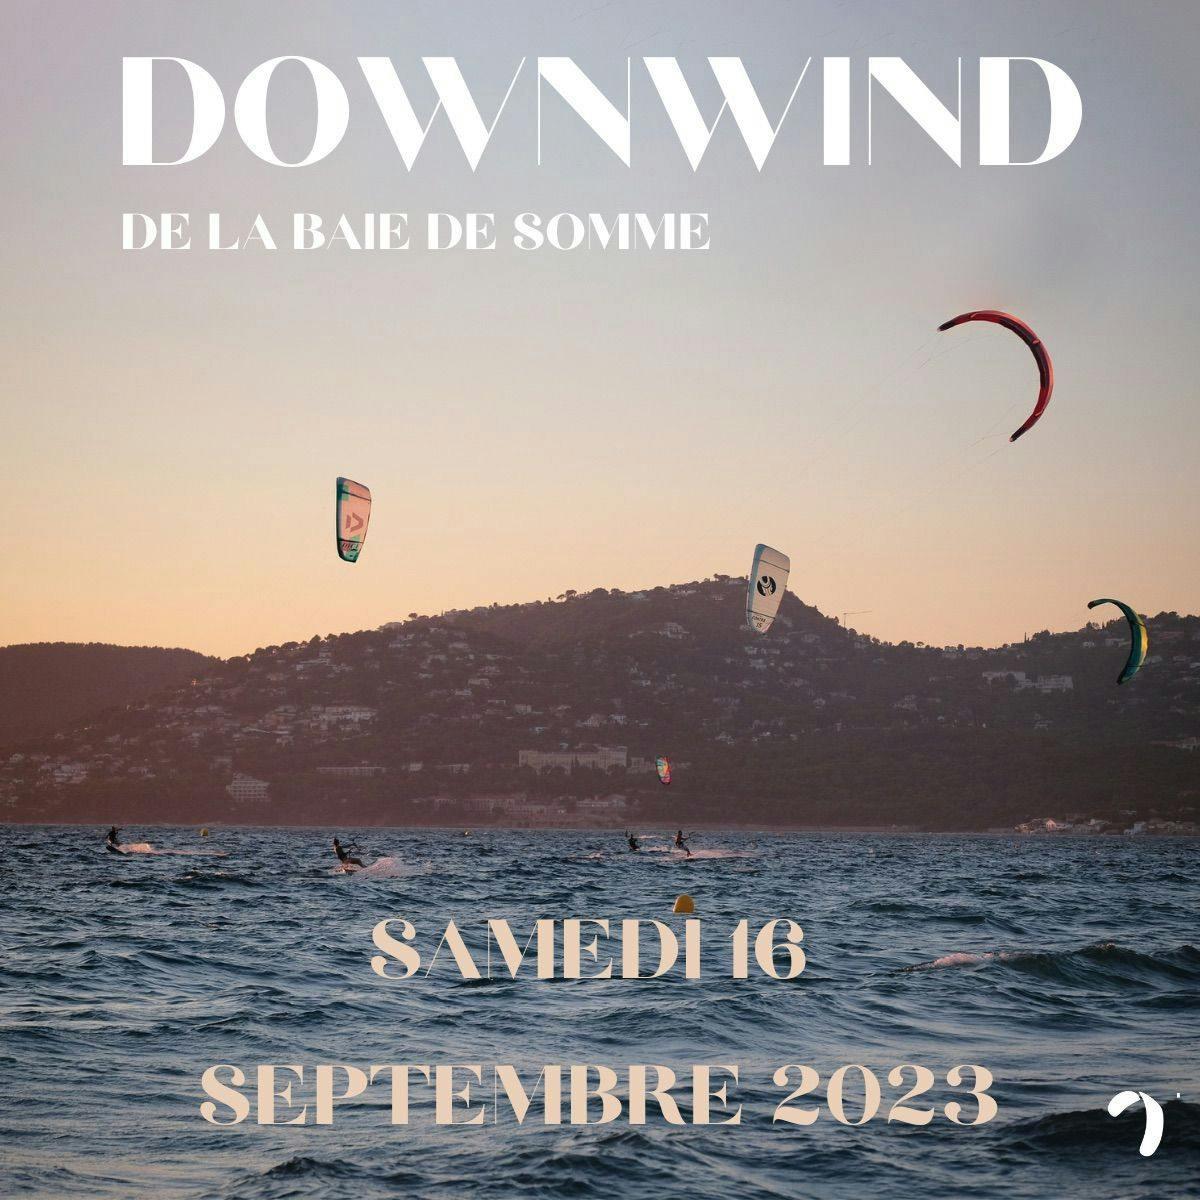 DOWNWIND DE LA BAIE DE SOMME - 23 SEPTEMBRE 2023